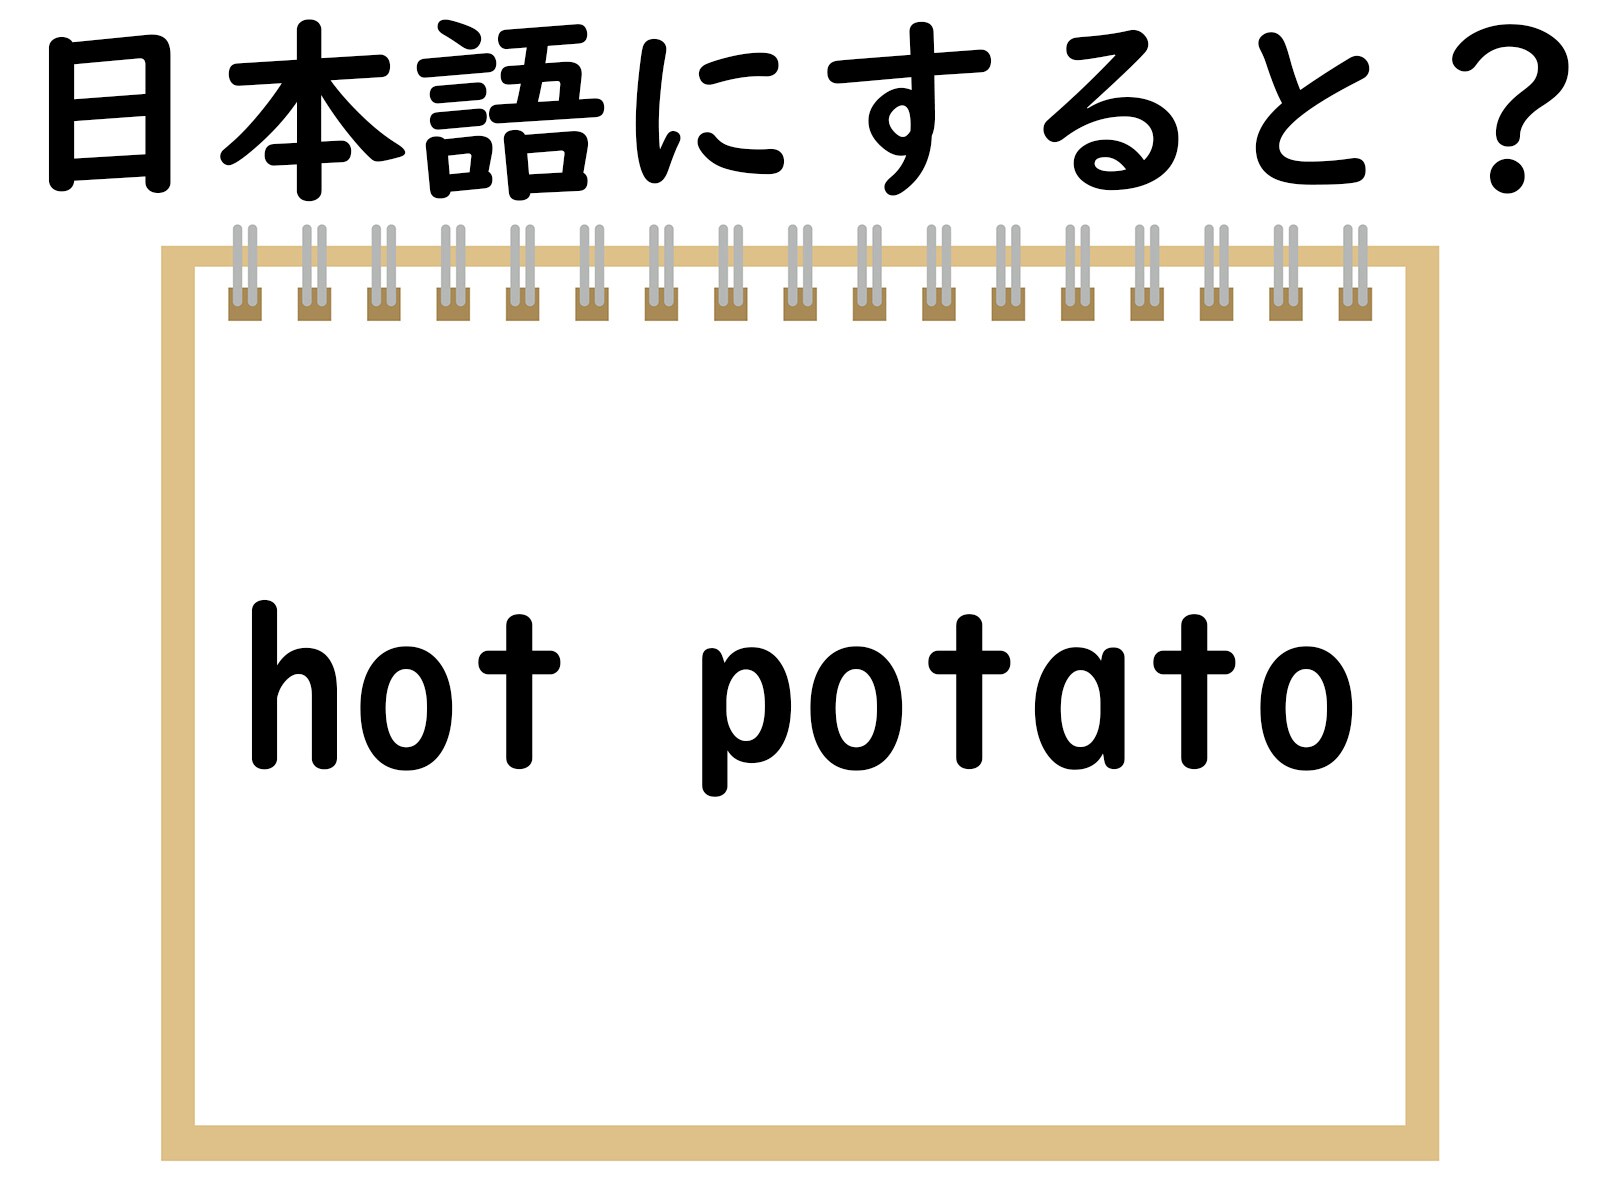 「hot potato」はどういう意味？ 熱々のジャガイモをイメージしてみると？ 【英語クイズ】